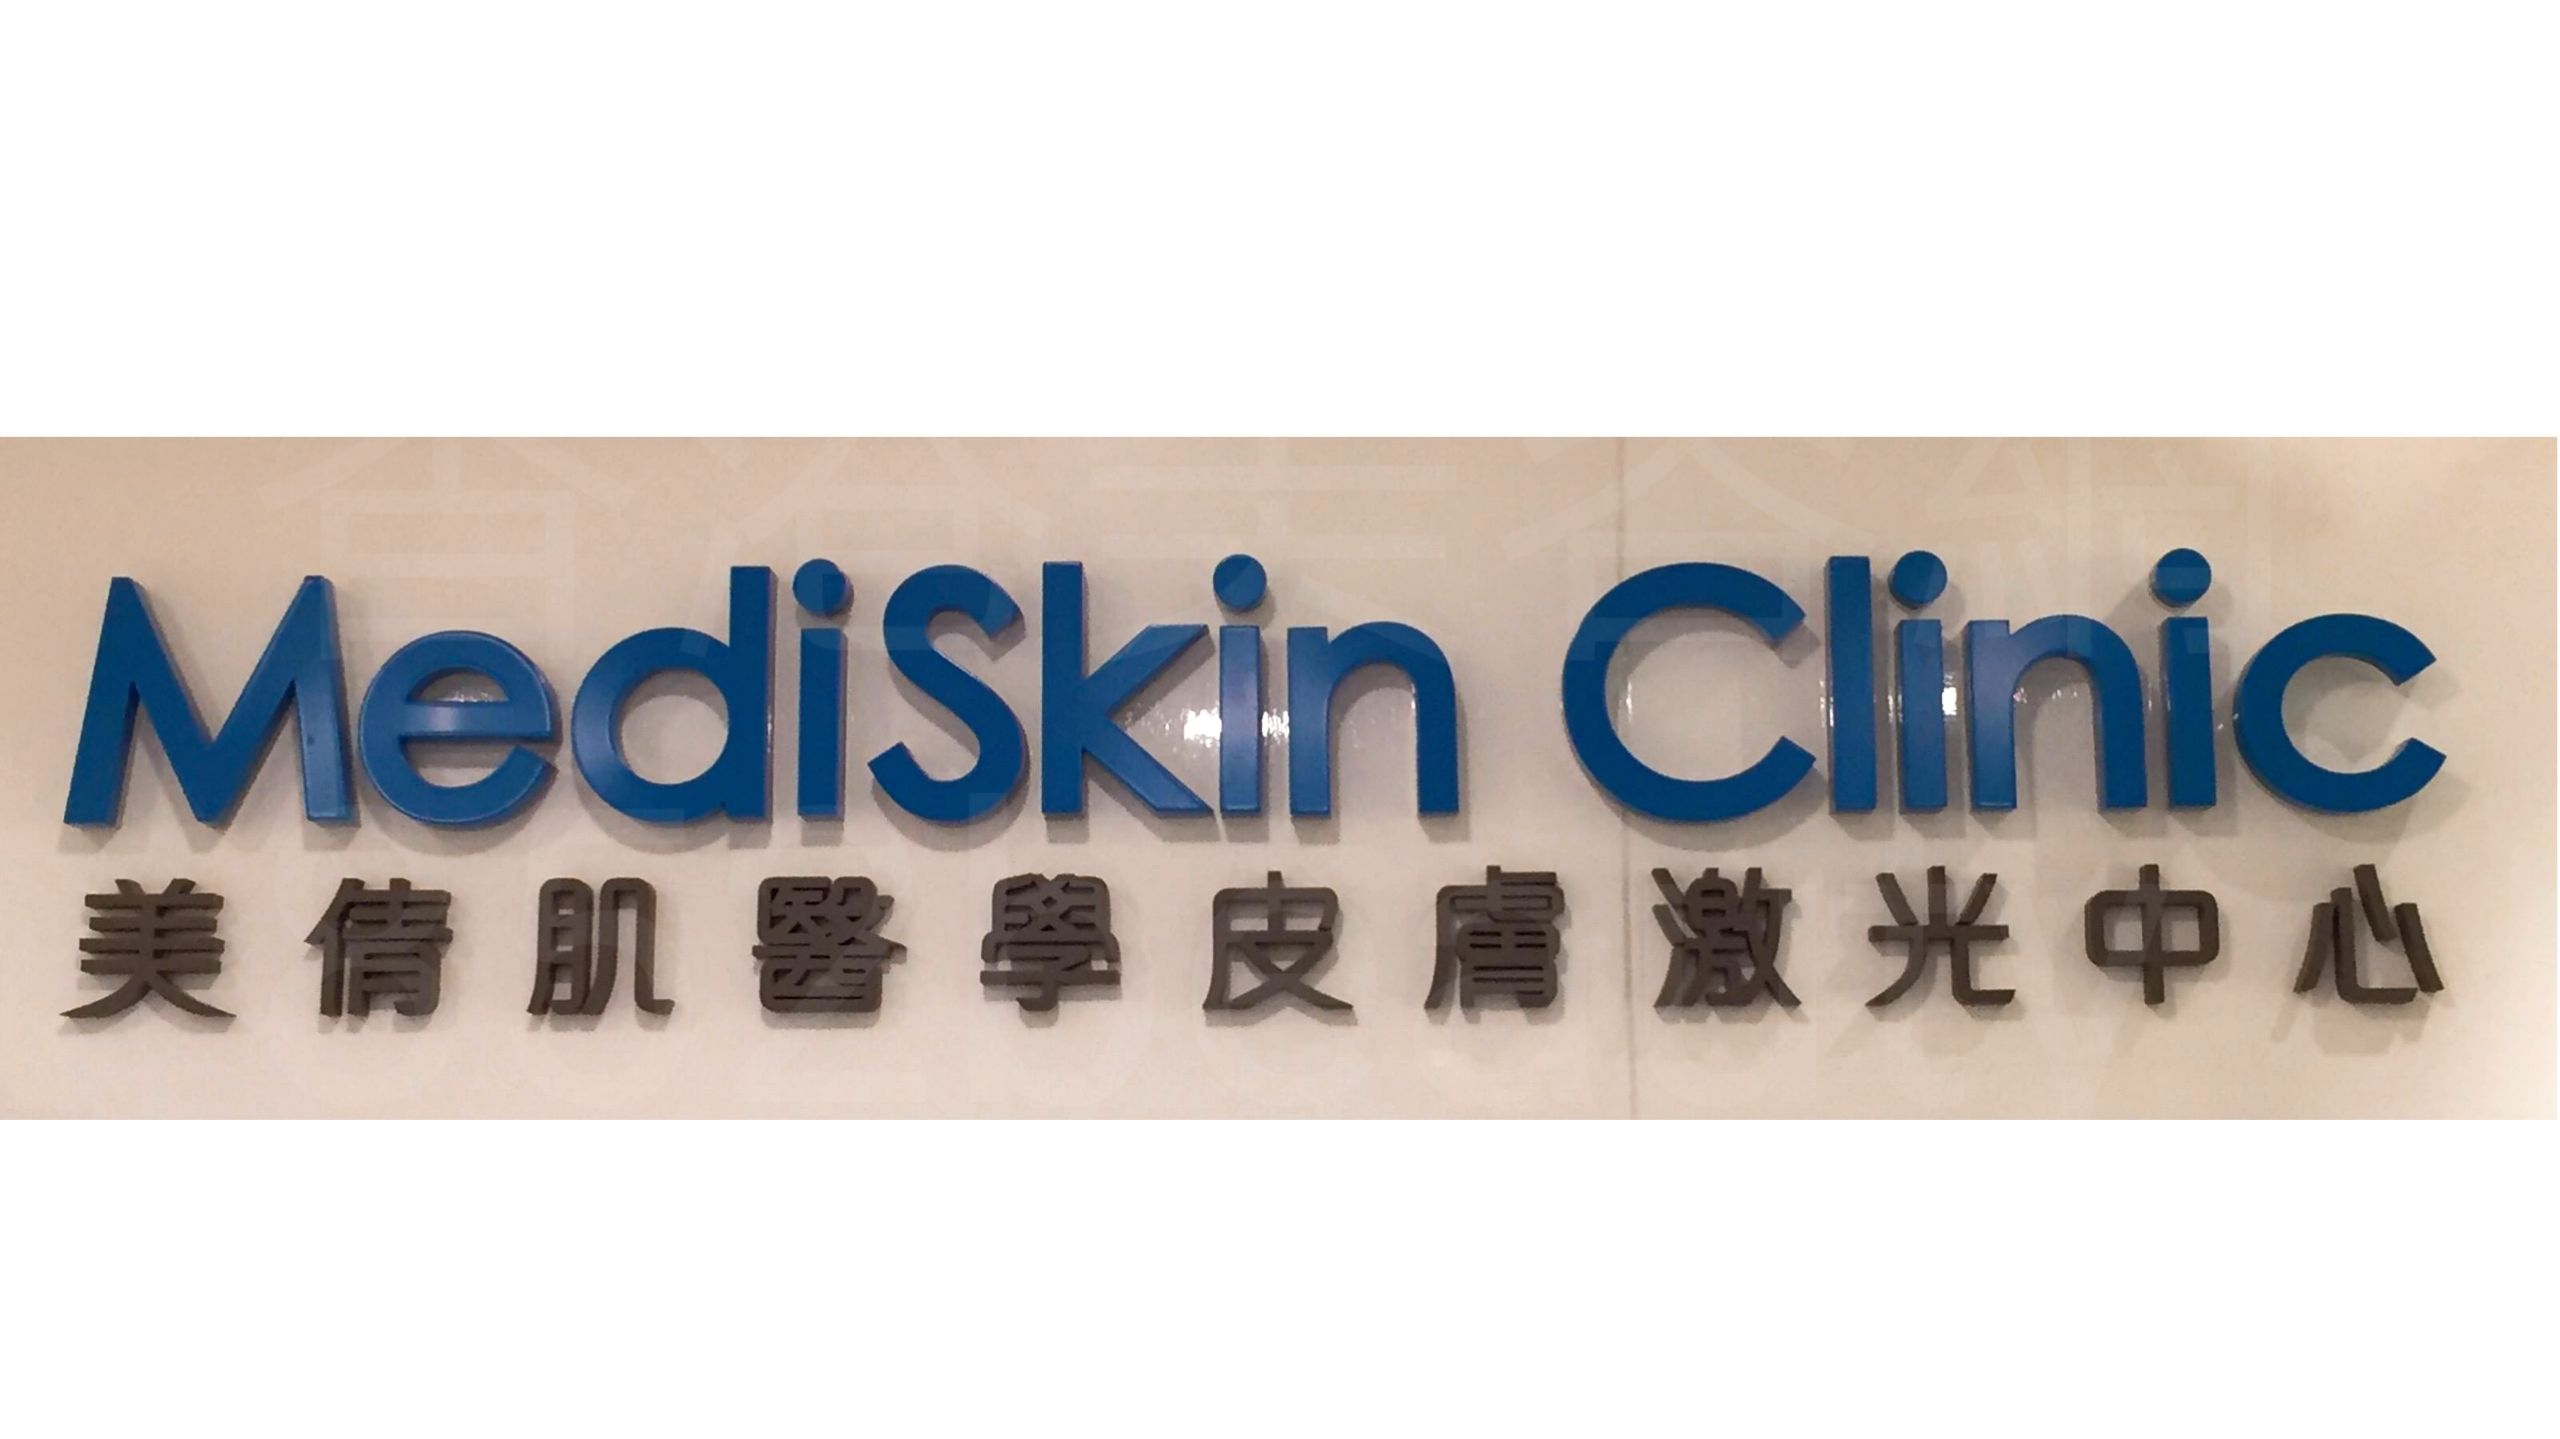 醫學美容: MediSkin Clinic 美倩肌醫學皮膚激光中心